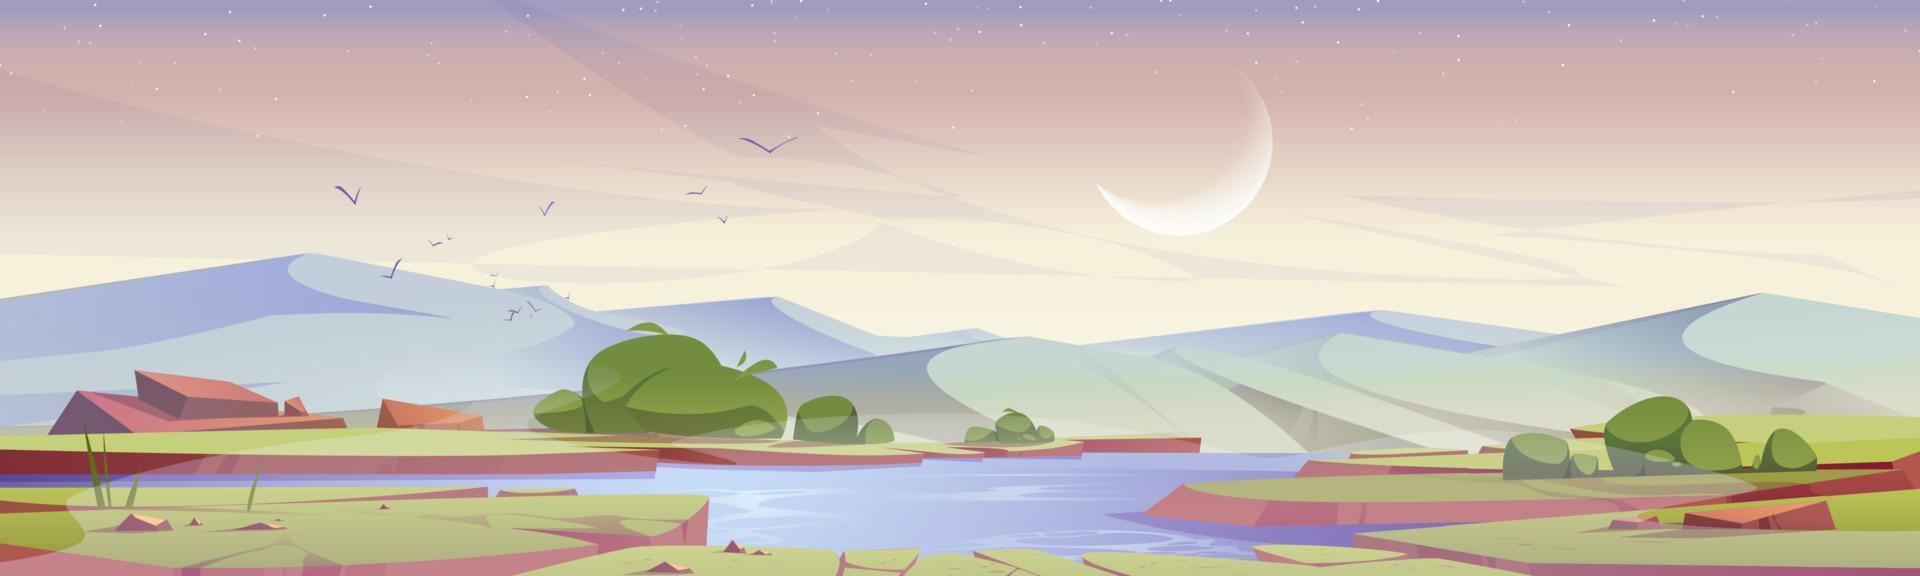 campo de paisagem de manhã cedo dos desenhos animados com lagoa vetor